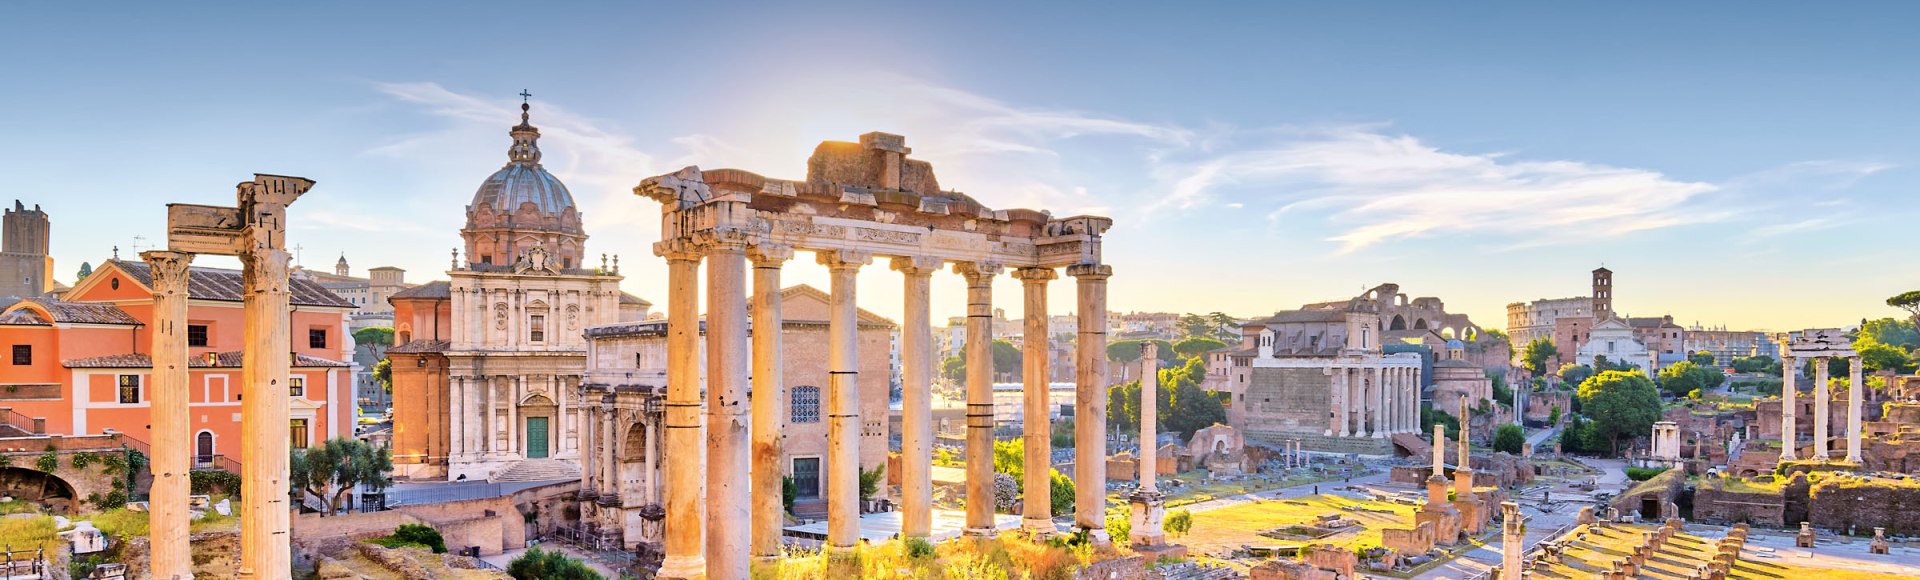 Das Forum Romanum in Rom, © Noppasinw - Fotolia.com